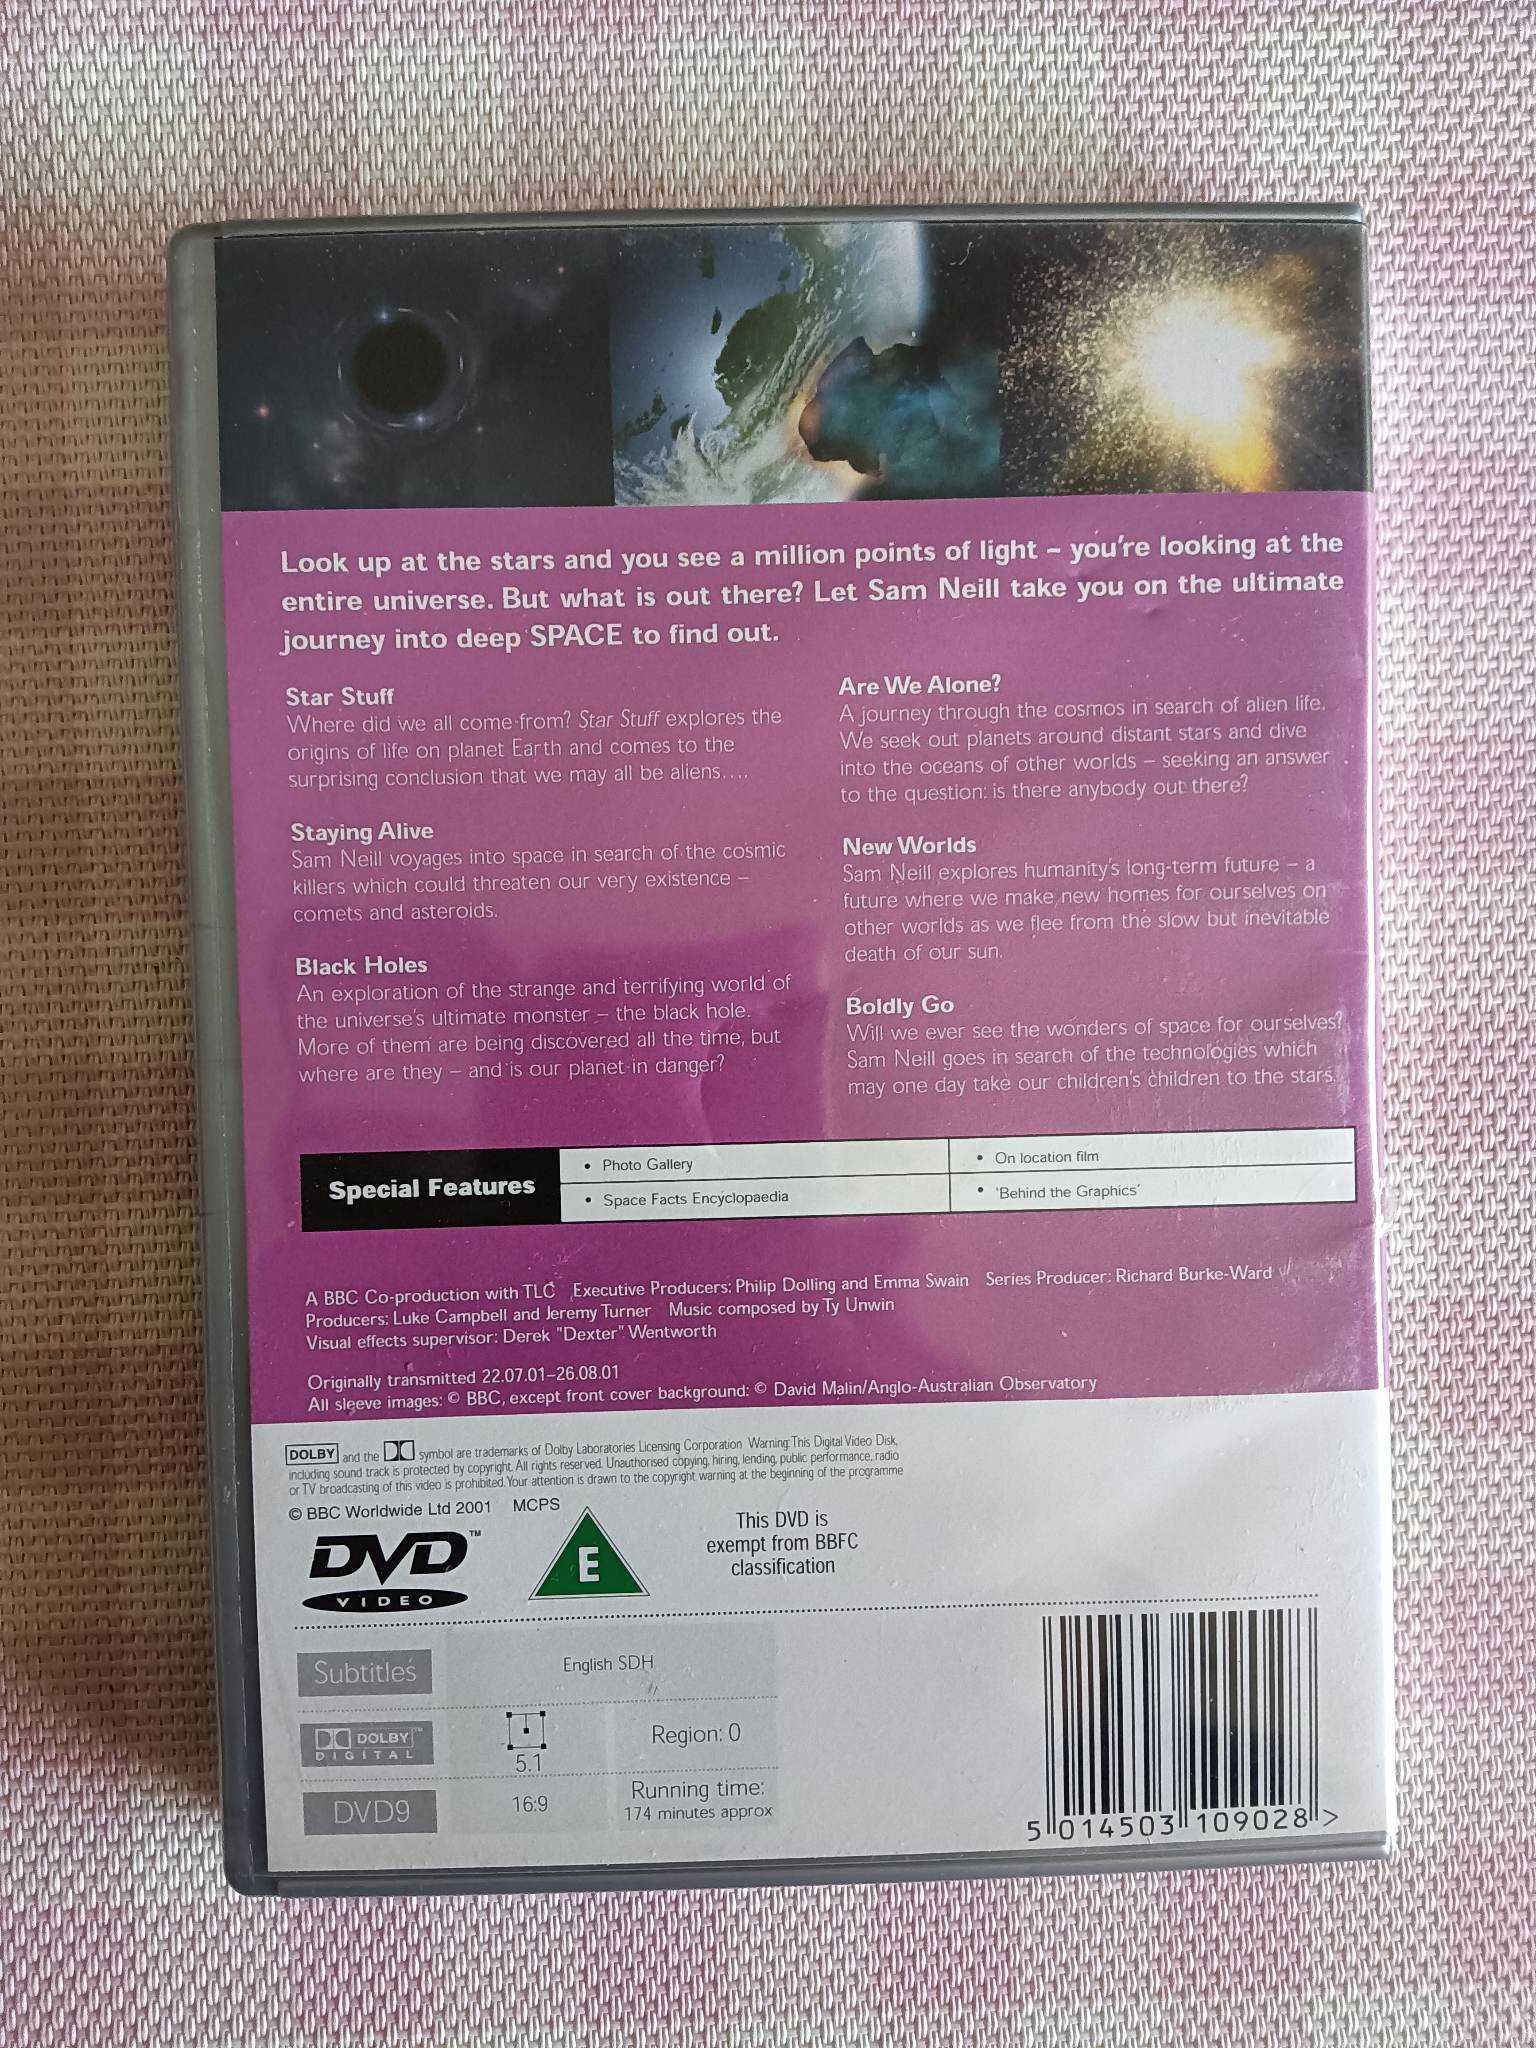 DVD Space - Série Documentário BBC  (sem legendas portuguesas)